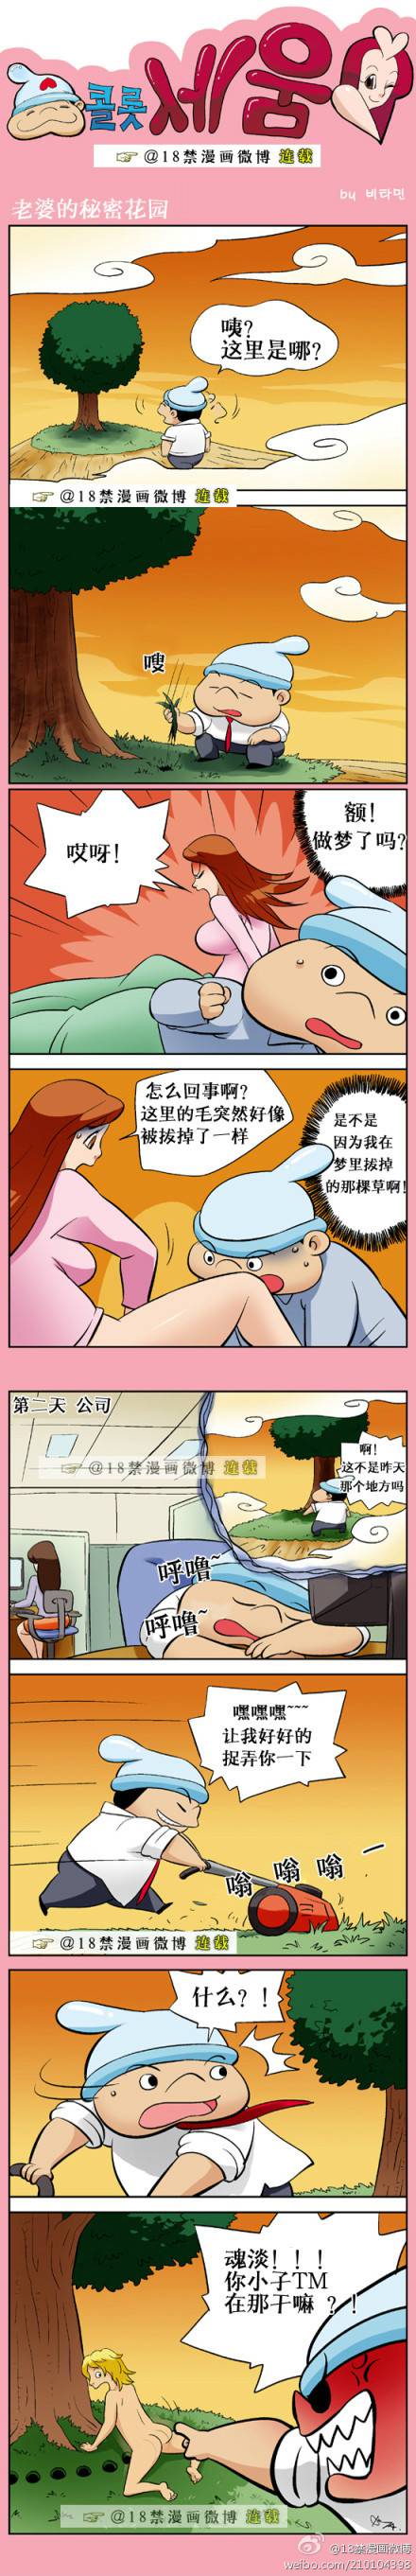 邪恶漫画爆笑囧图第340刊：梦中美女